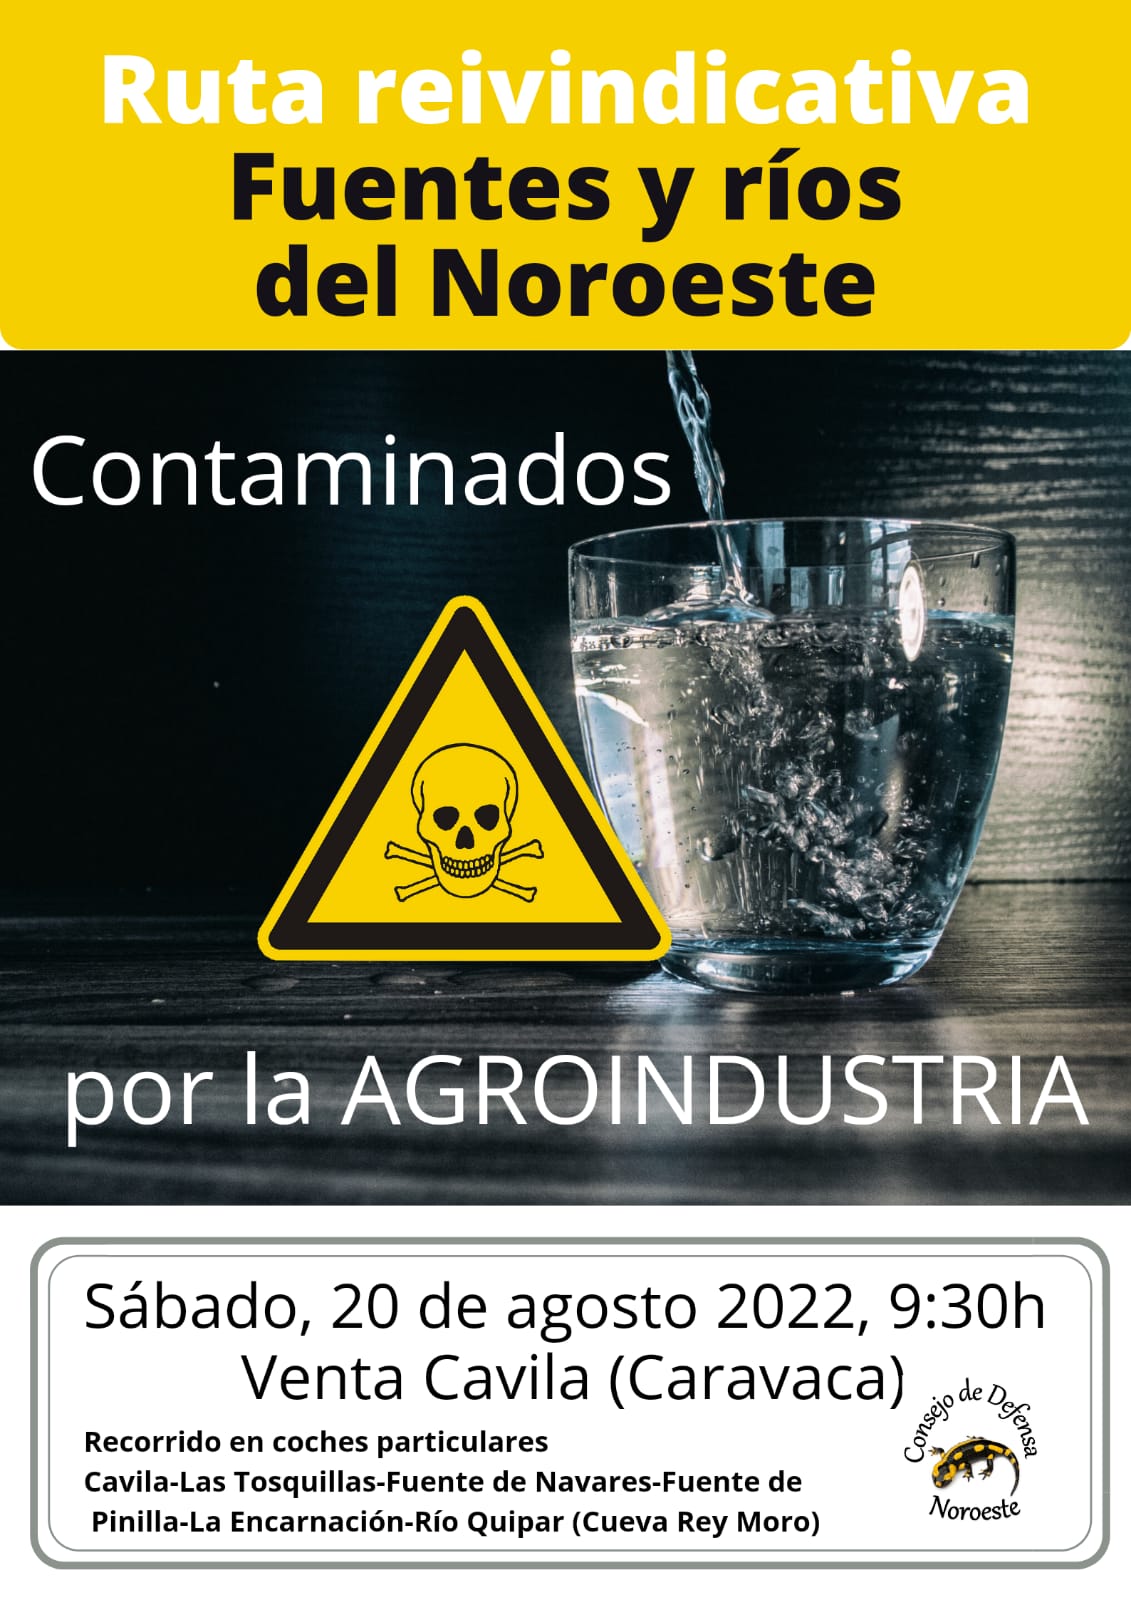 Acto informativo y ruta reivindicativa por Fuentes y Ríos del Noroeste contaminados por la AGROINDUSTRIA